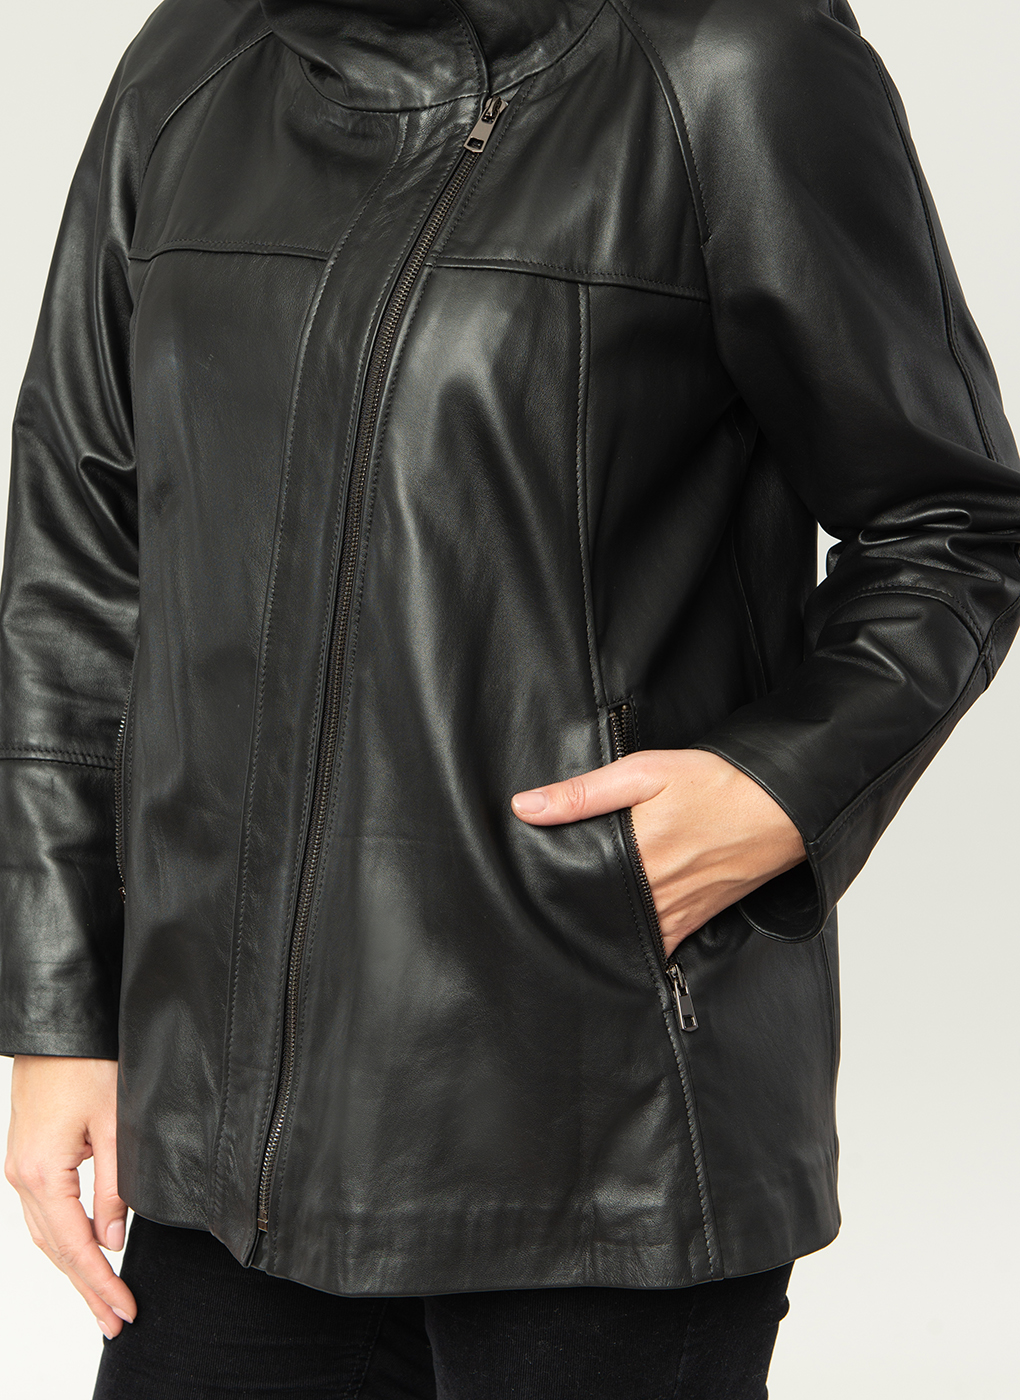 Кожаная куртка женская Каляев 1611019 черная 52 RU